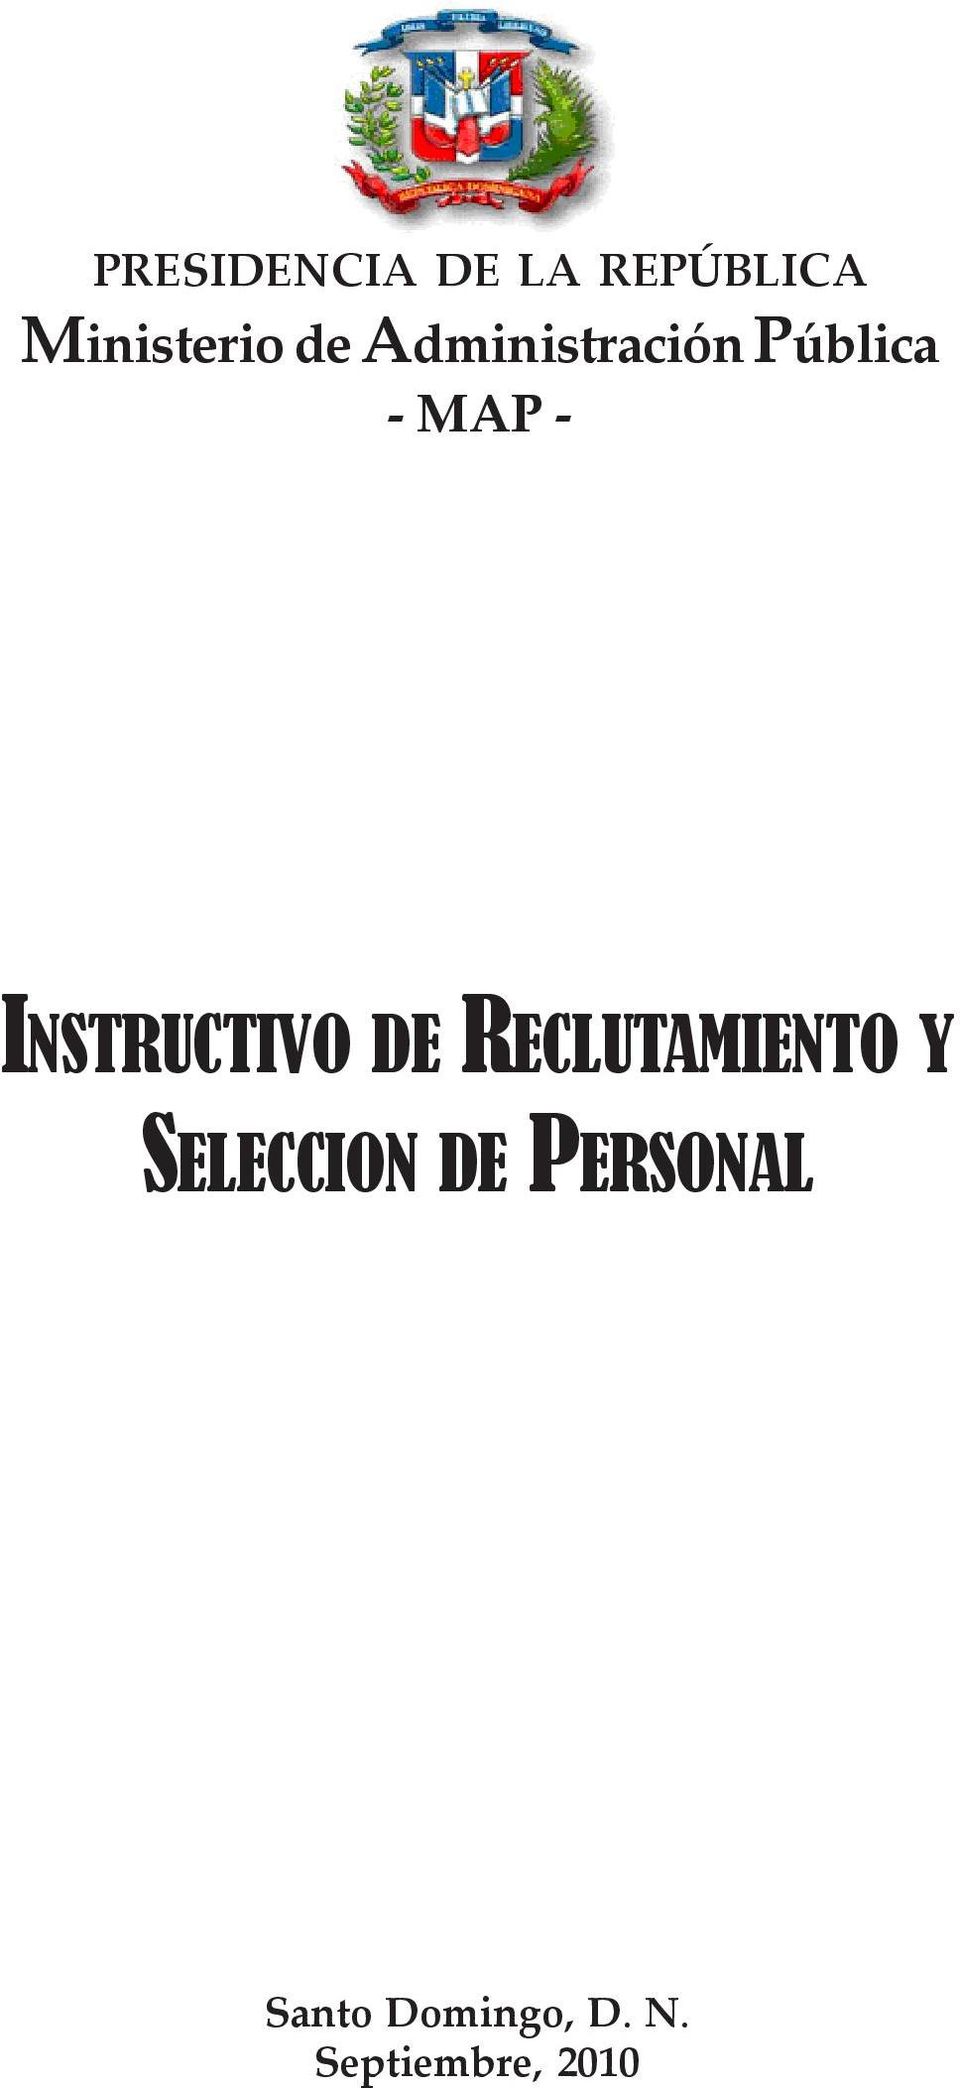 INSTRUCTIVO DE RECLUTAMIENTO Y SELECCION